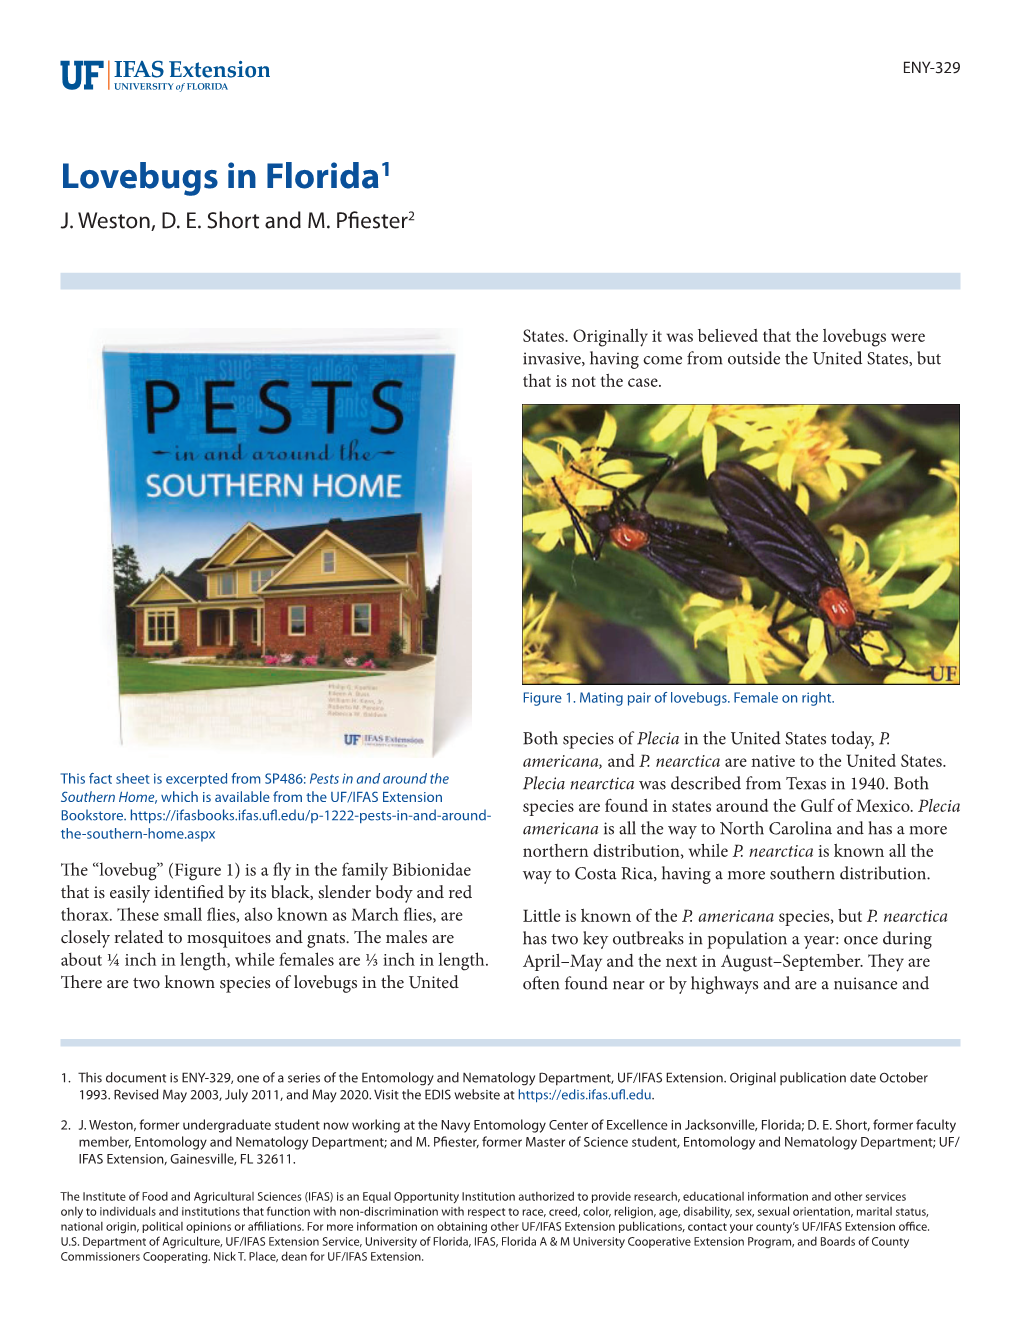 Lovebugs in Florida1 J